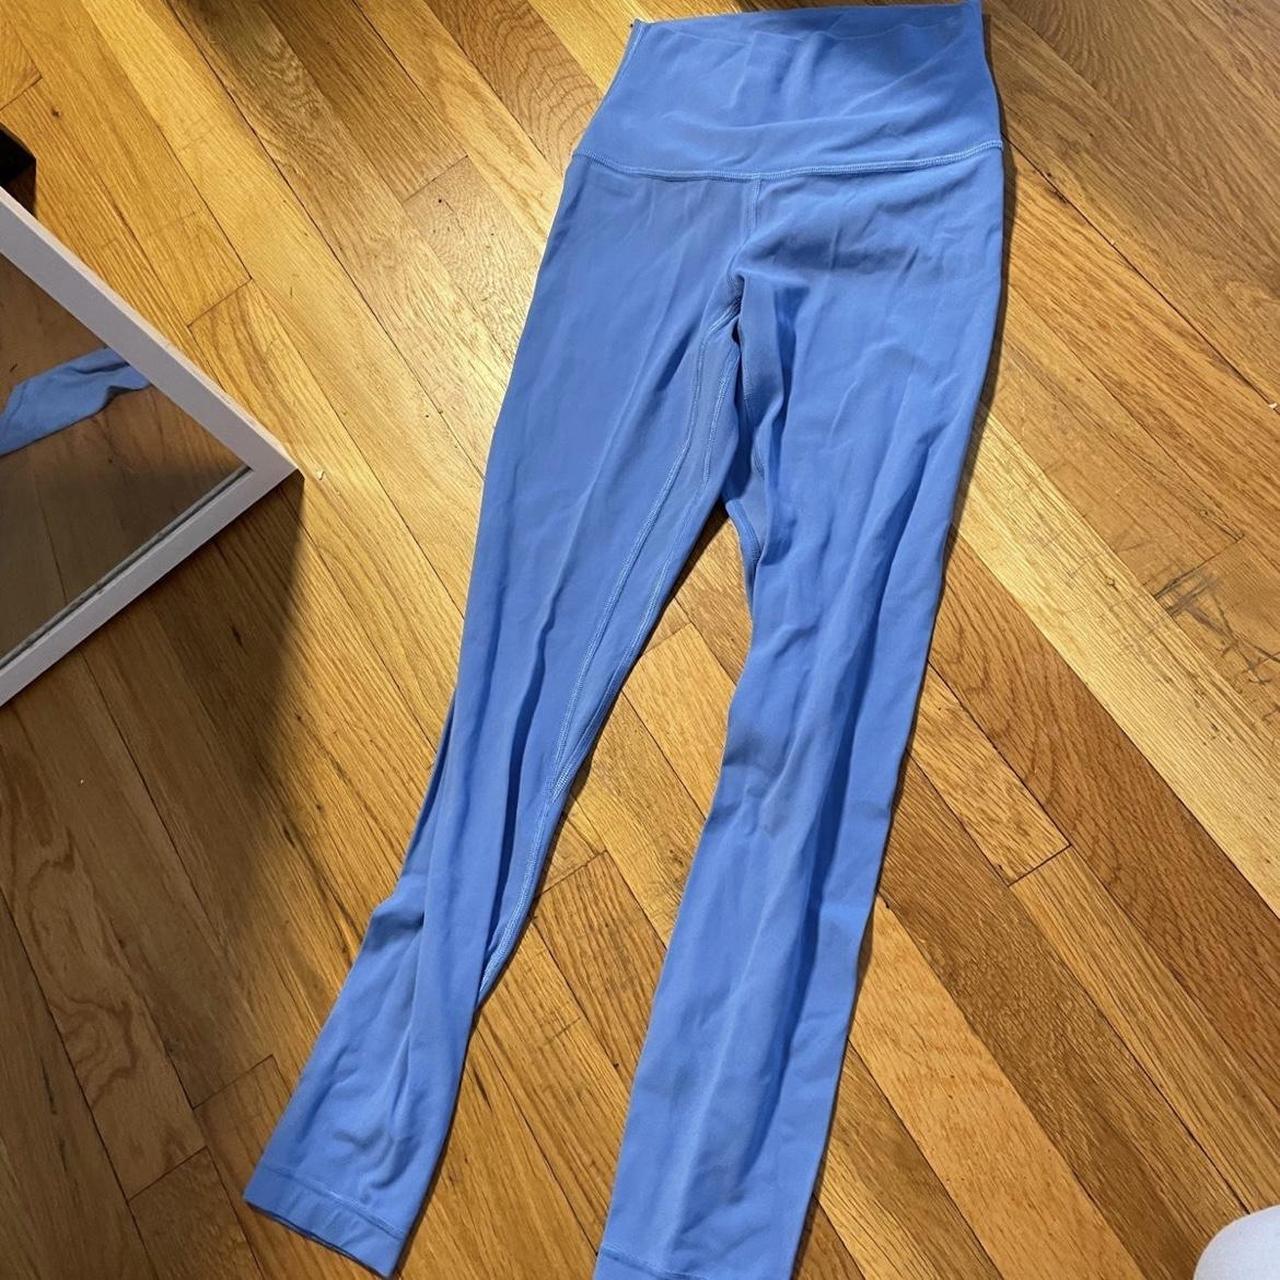 Lululemon align leggings blue Nile size 2